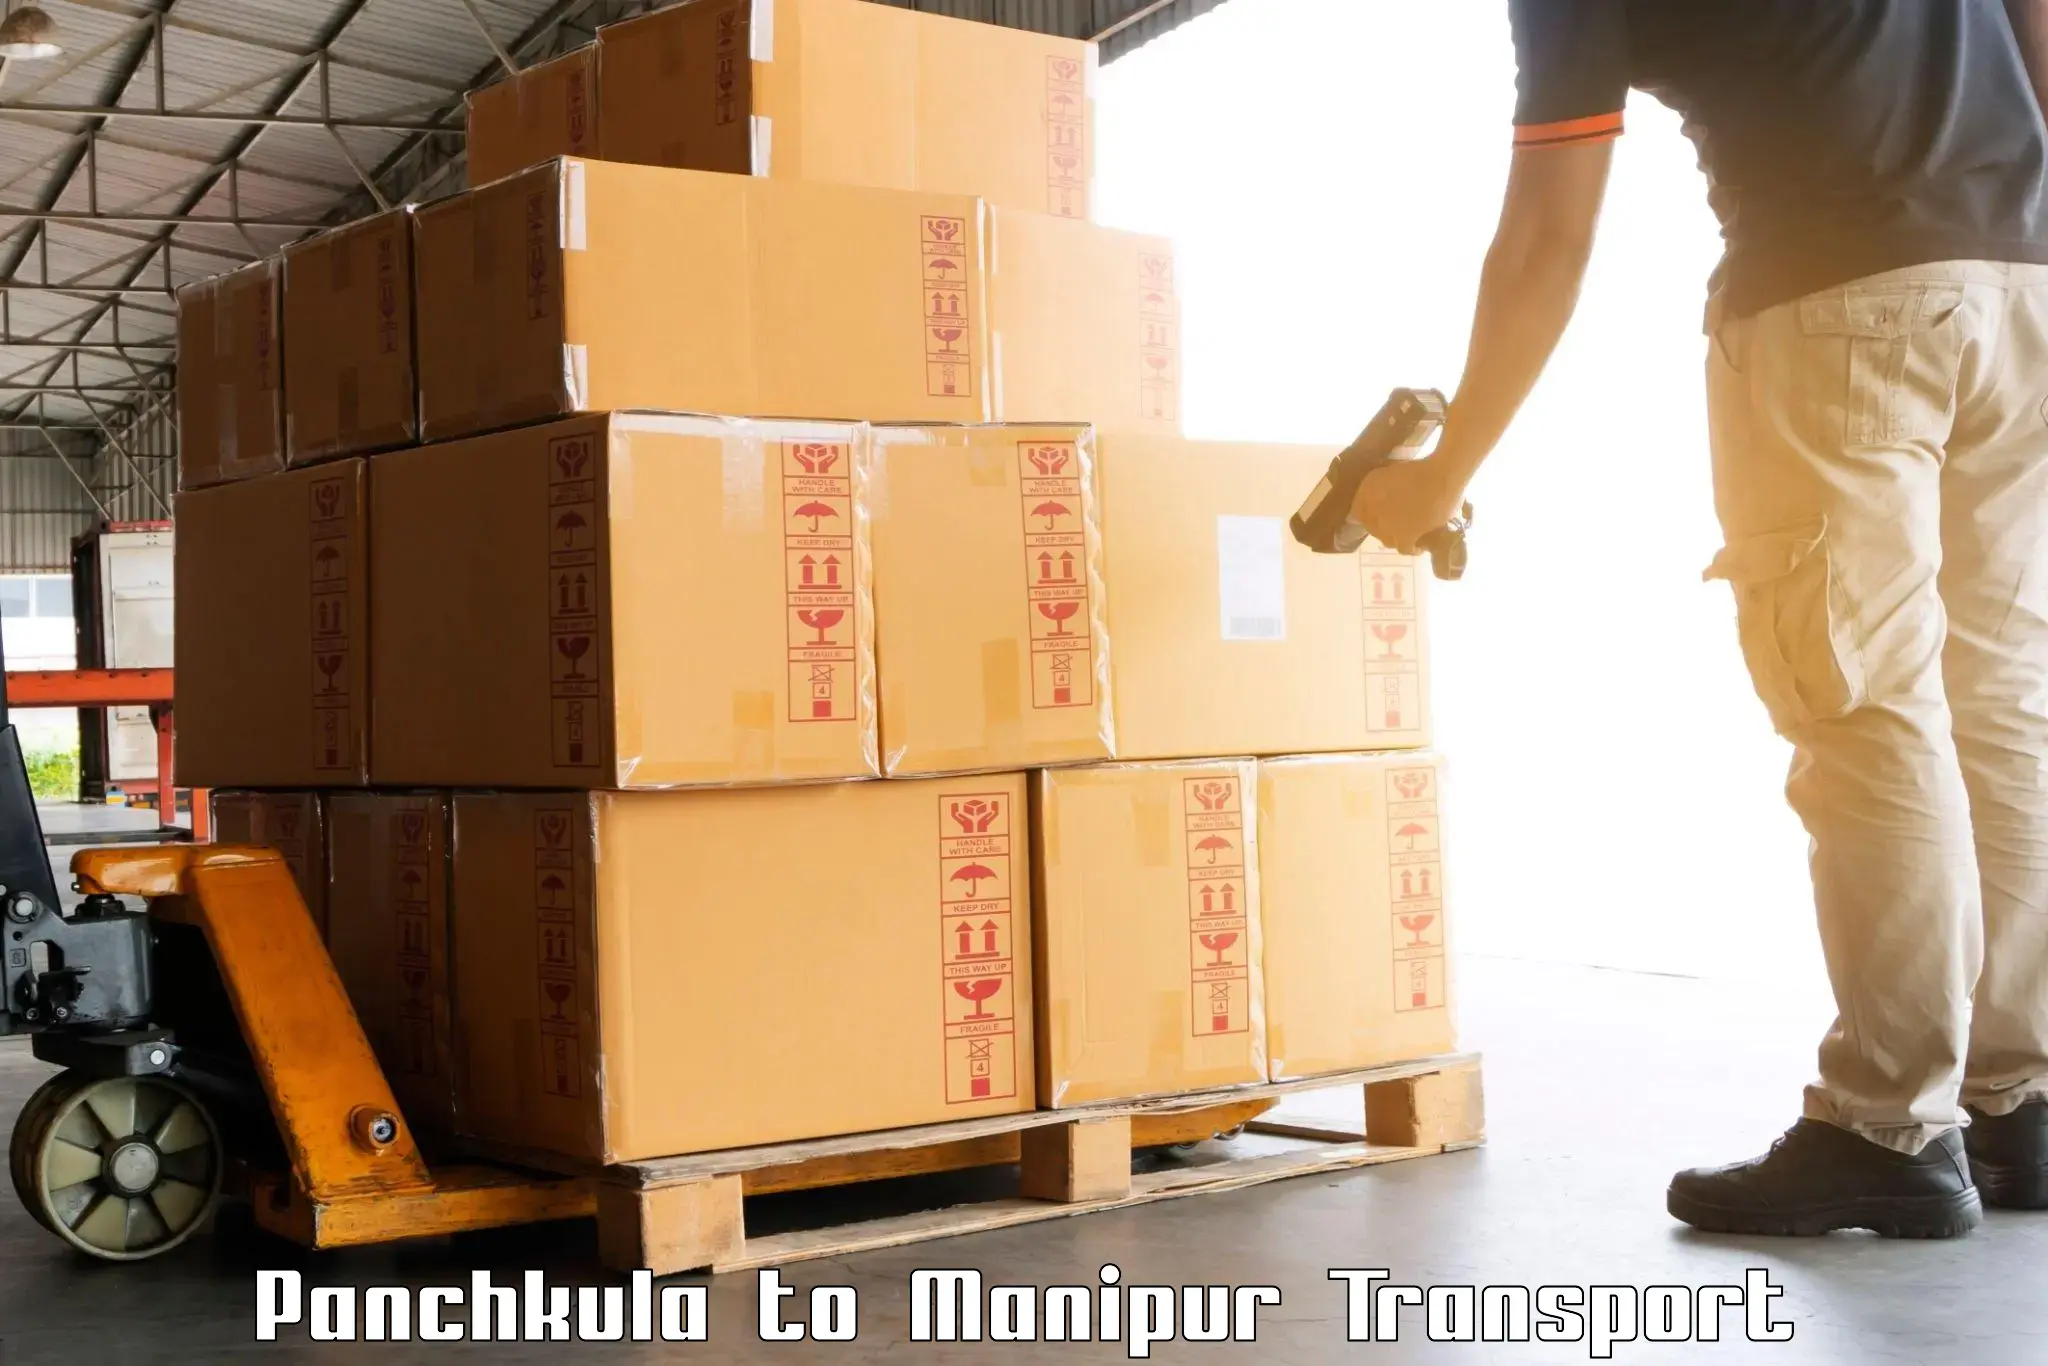 Bike shipping service Panchkula to Thoubal